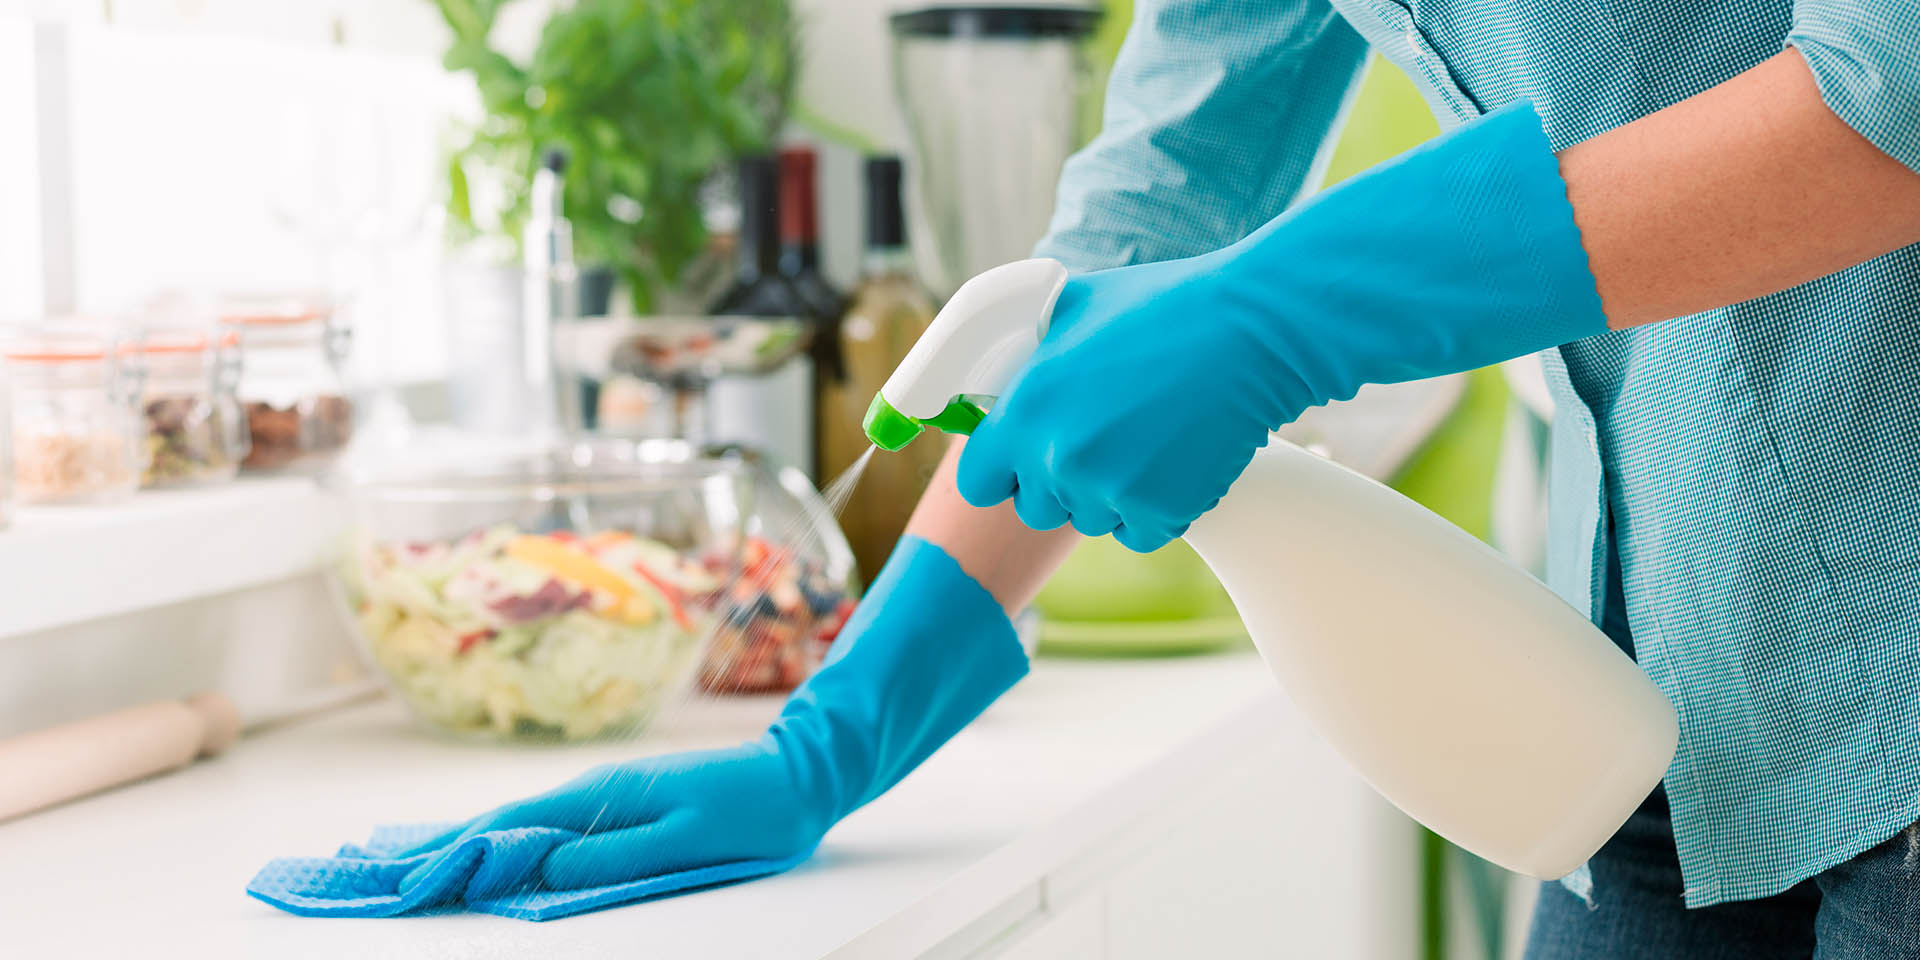 Recomendaciones para limpiar y desinfectar el hogar | El Imparcial de Oaxaca